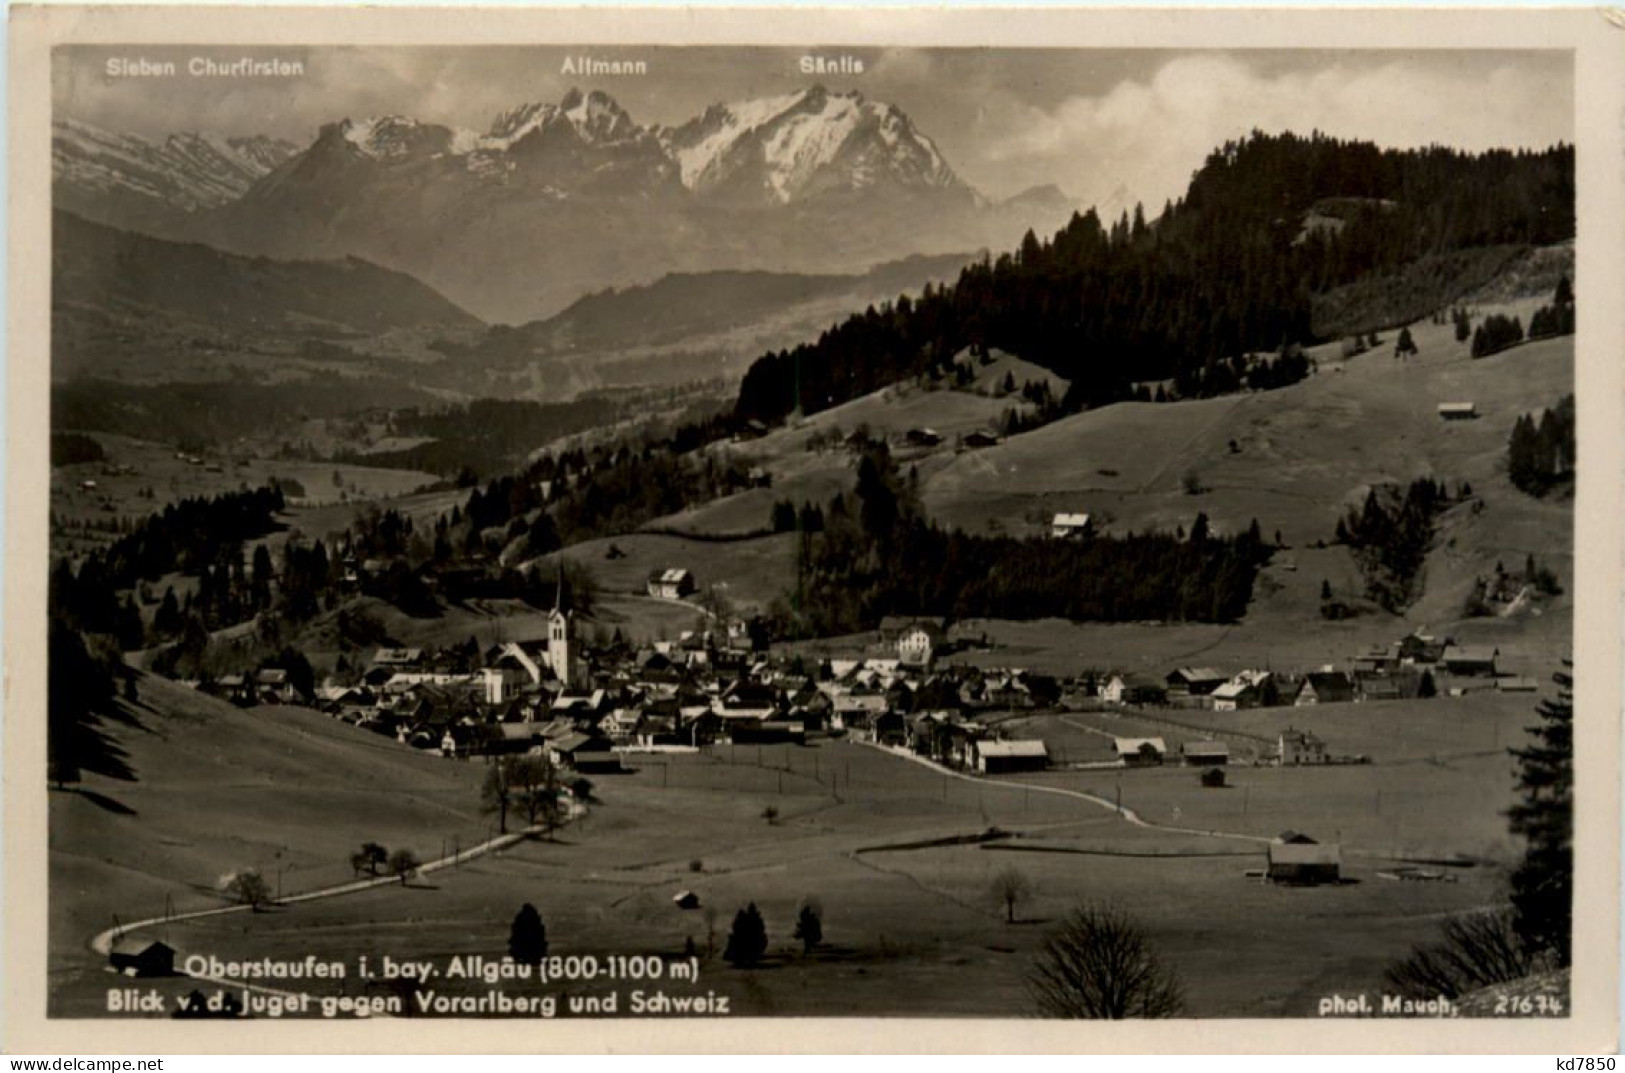 Oberstaufen, Blick V.d. Juget Gegen Vorarlberg Und Schweiz - Oberstaufen